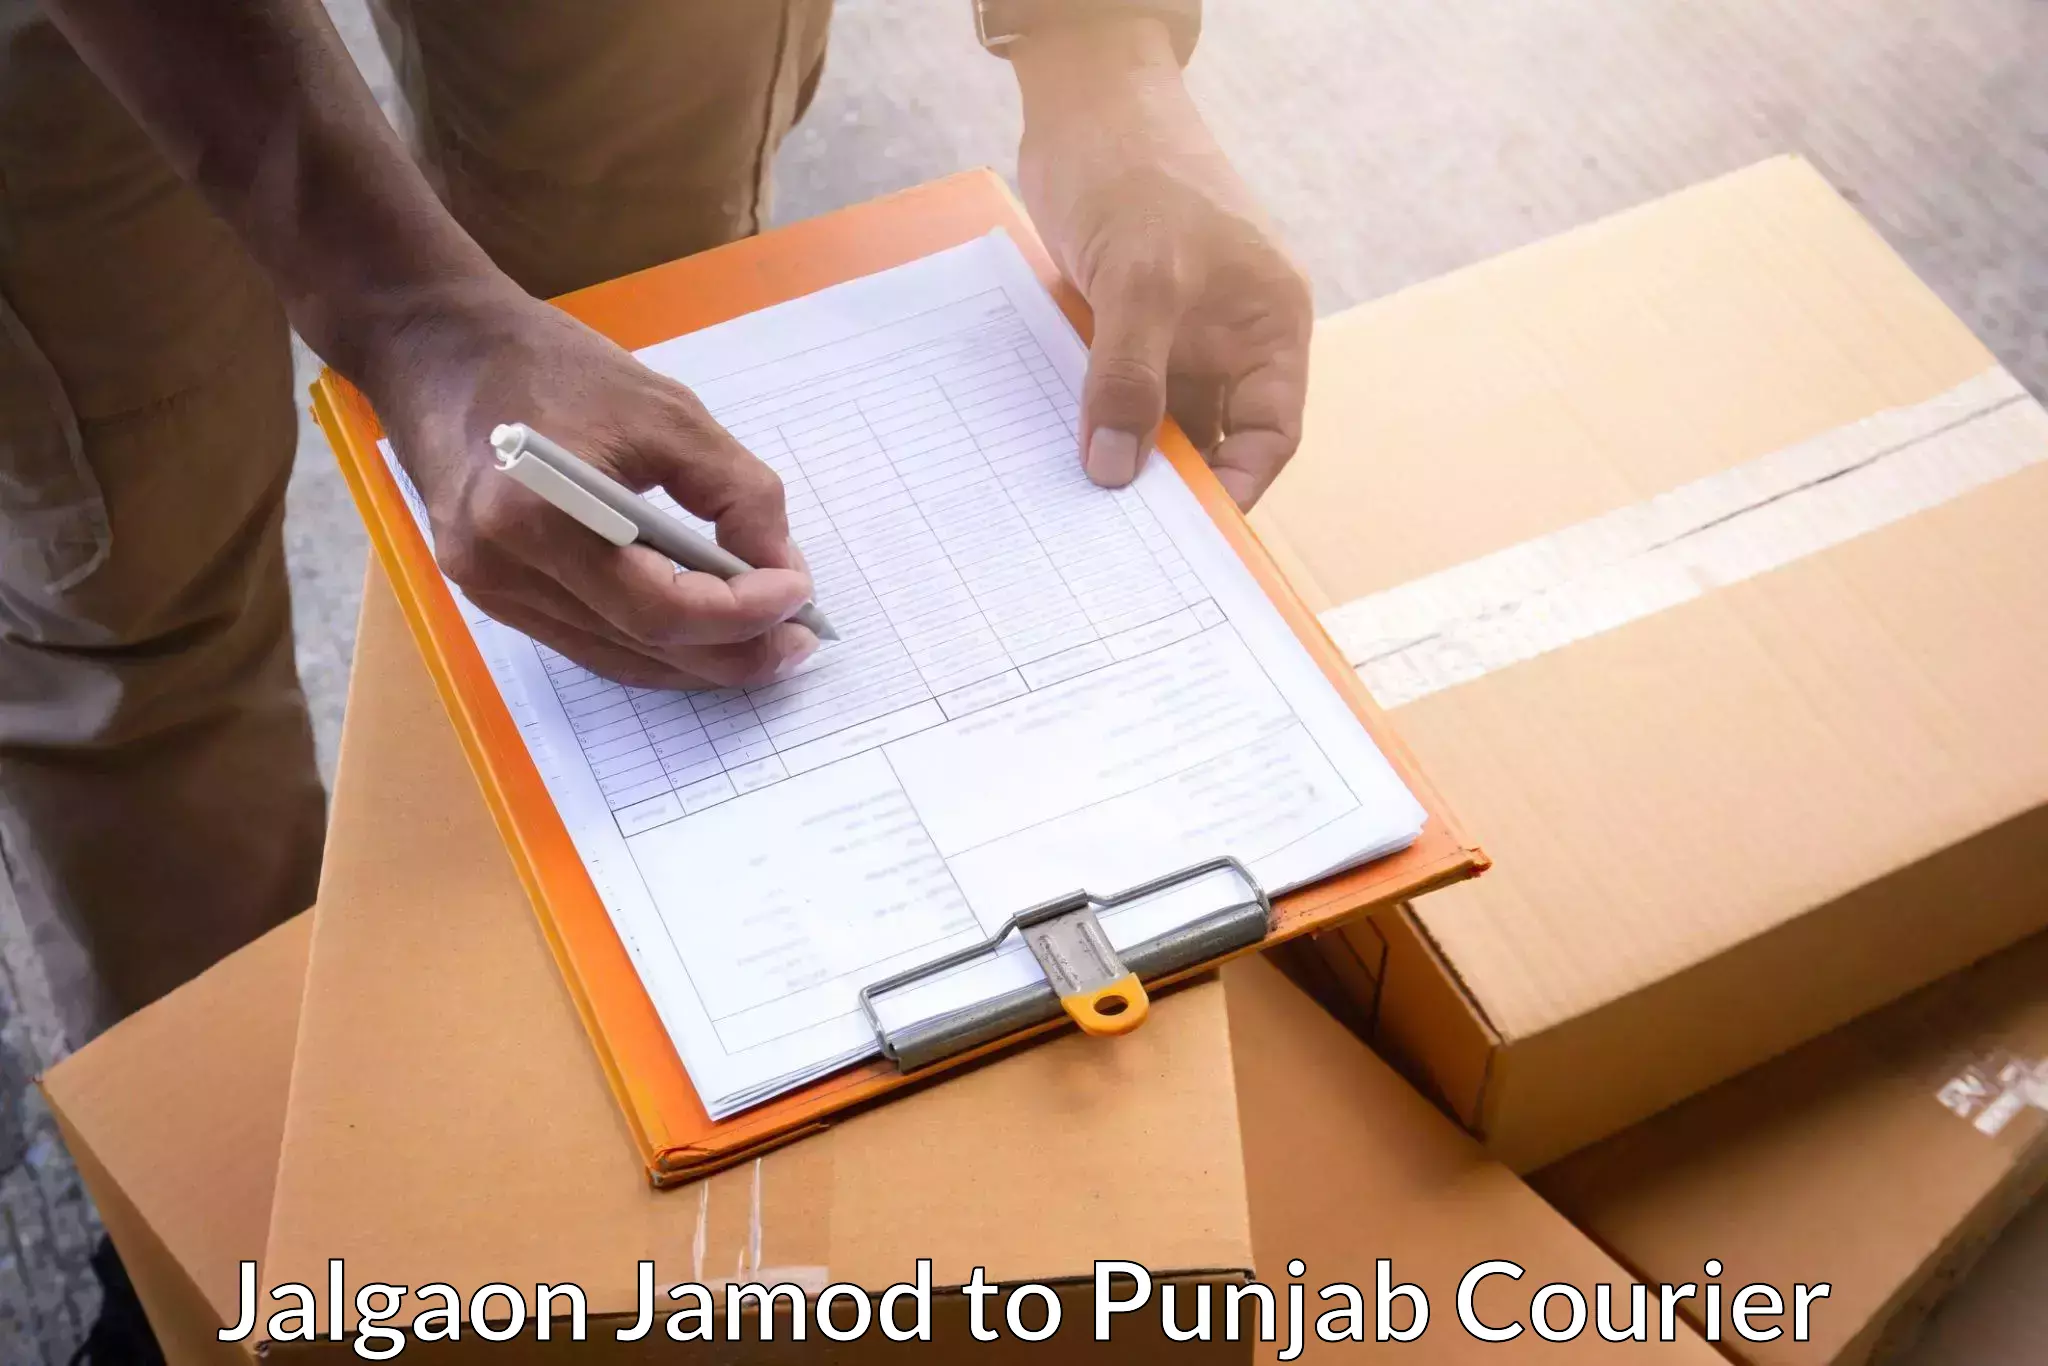 Subscription-based courier Jalgaon Jamod to Kotkapura